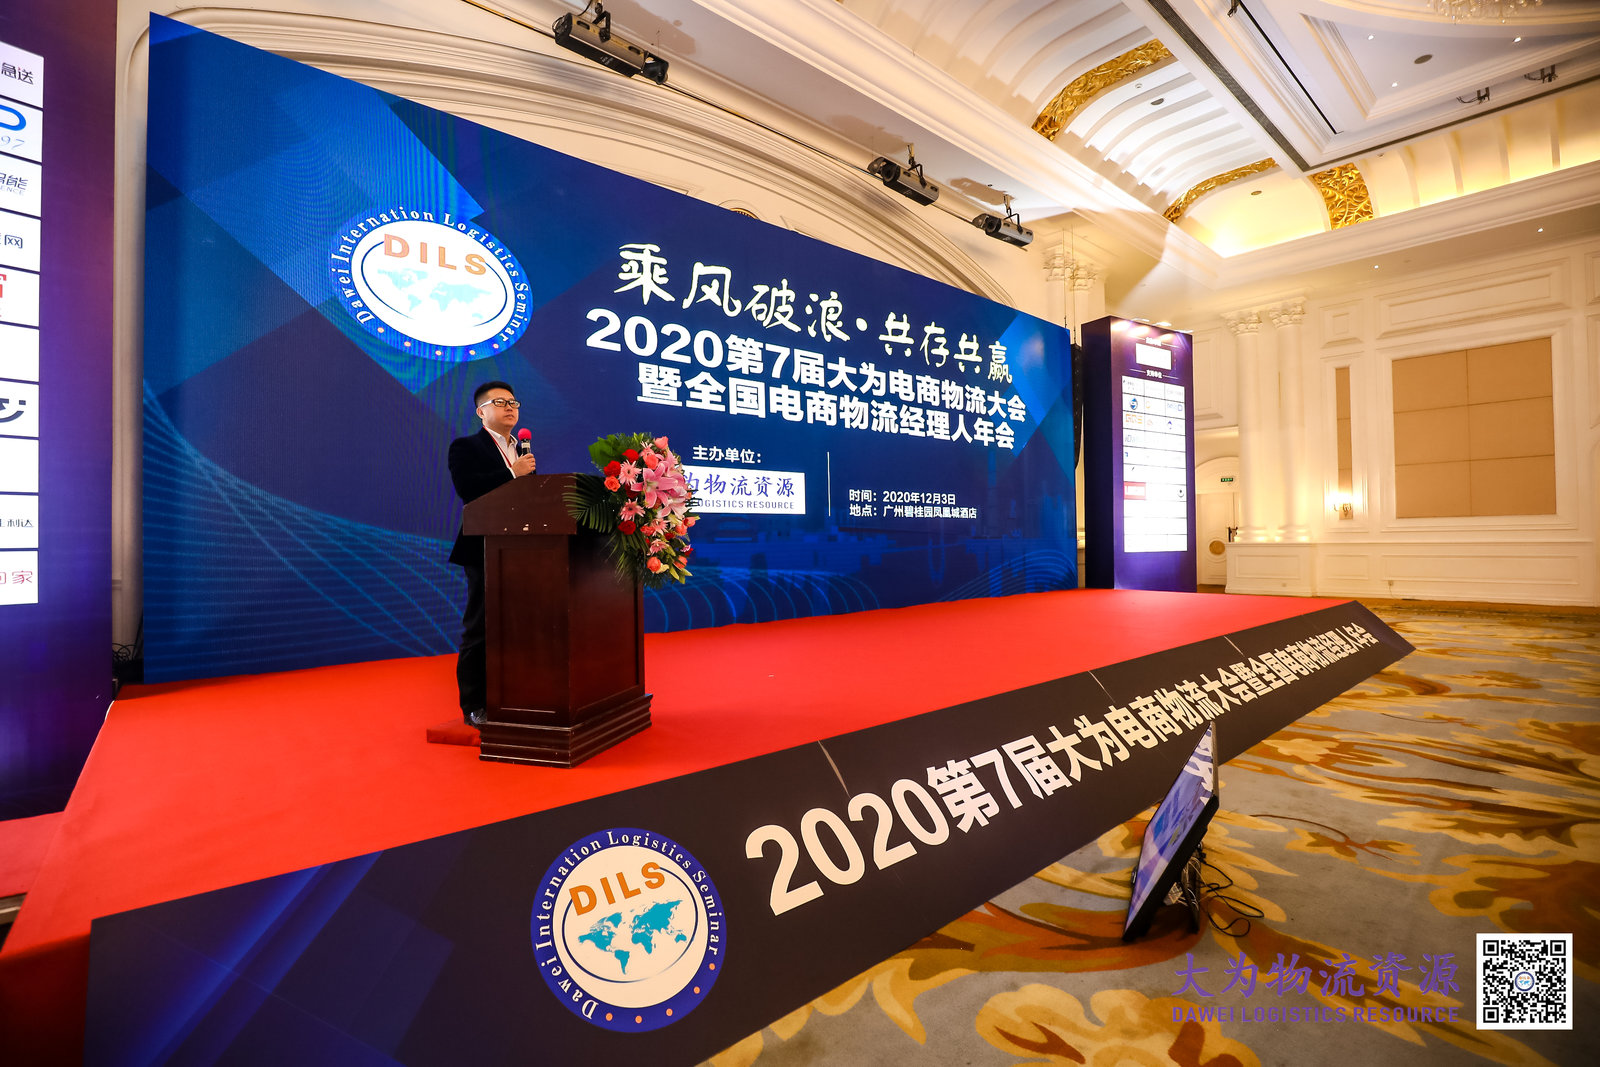 2020第7届大为电商物流大会 | 宝开常务副总裁王雷受邀出席并发表演讲